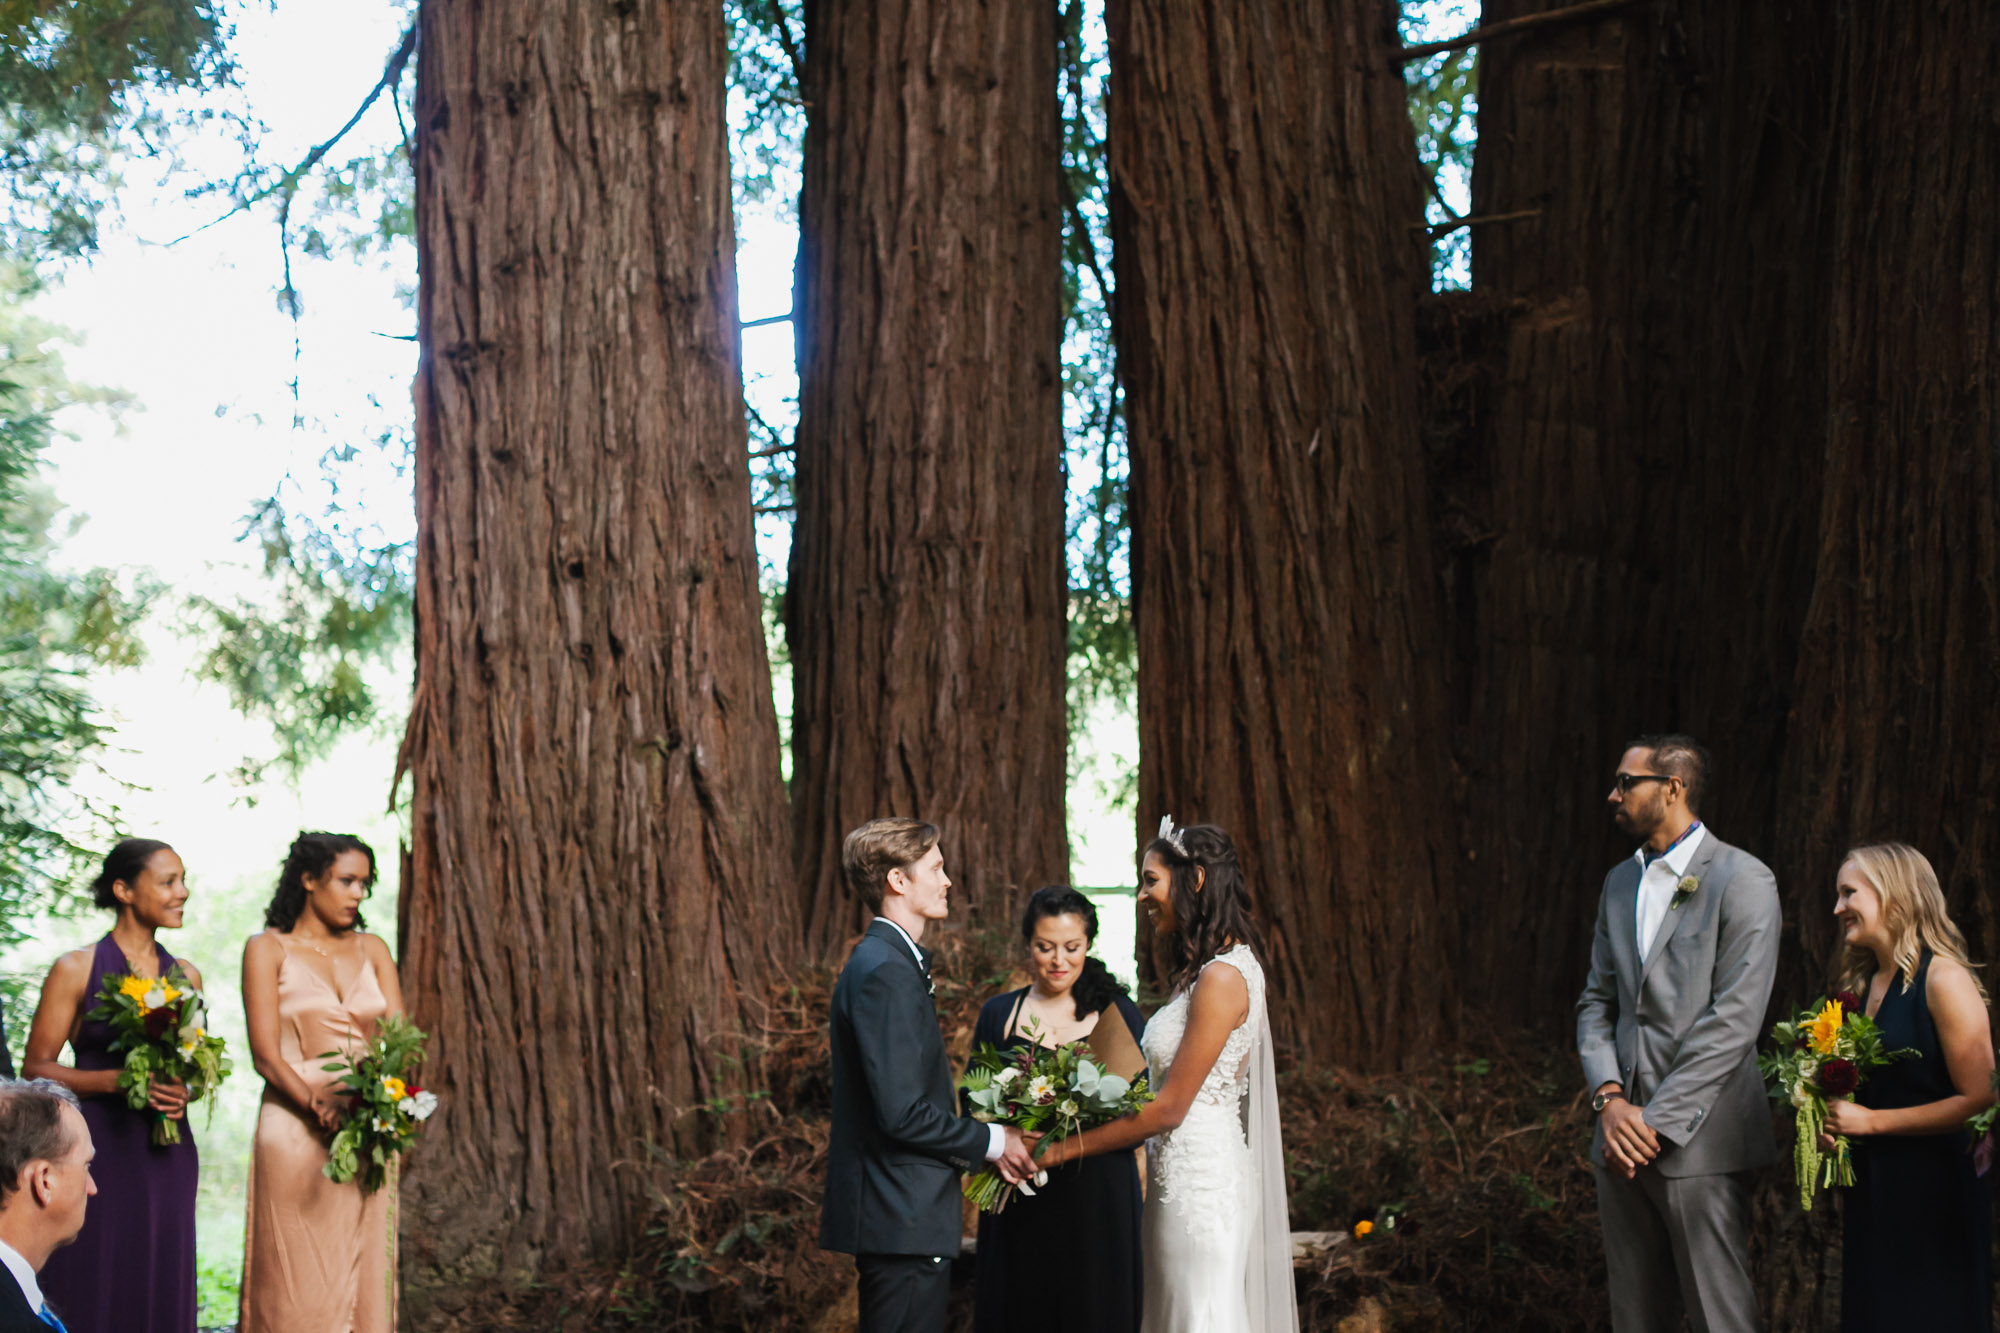 Wedding ceremony under giant redwood trees